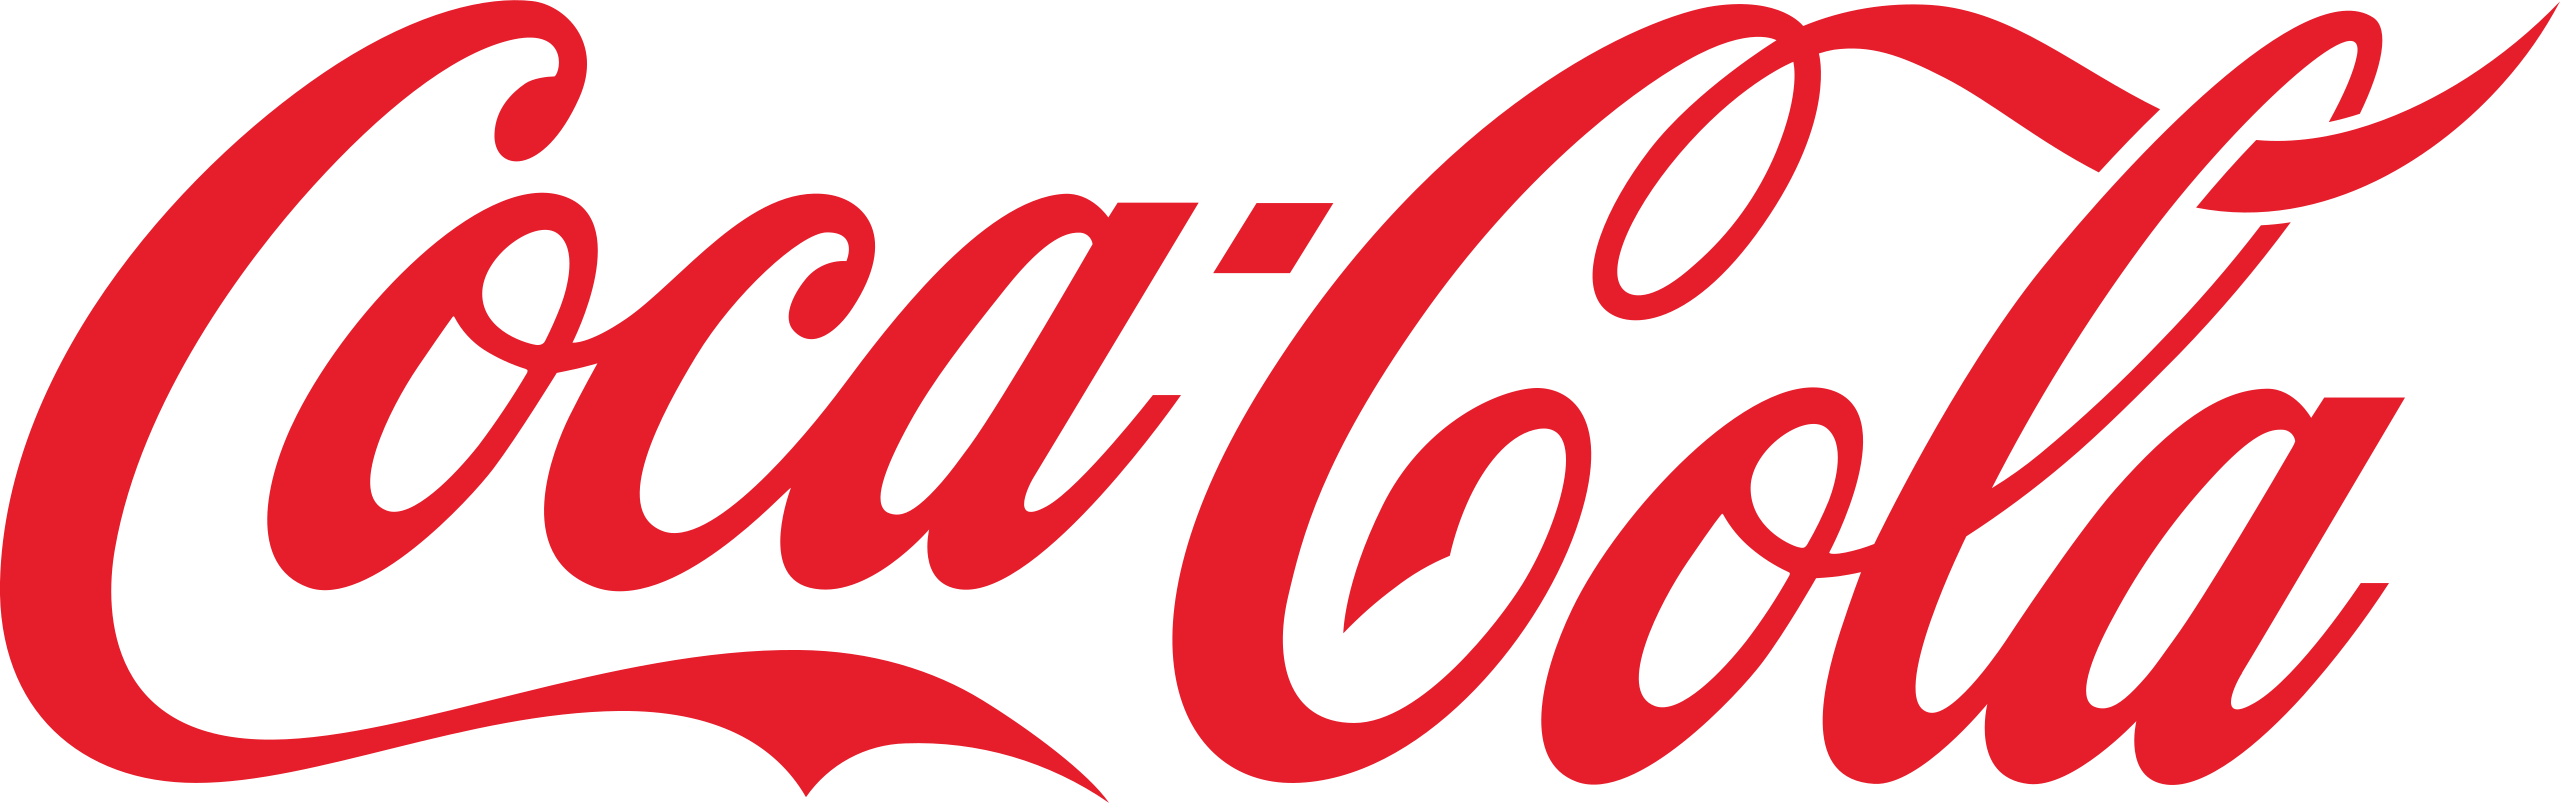 Marke Coca Cola